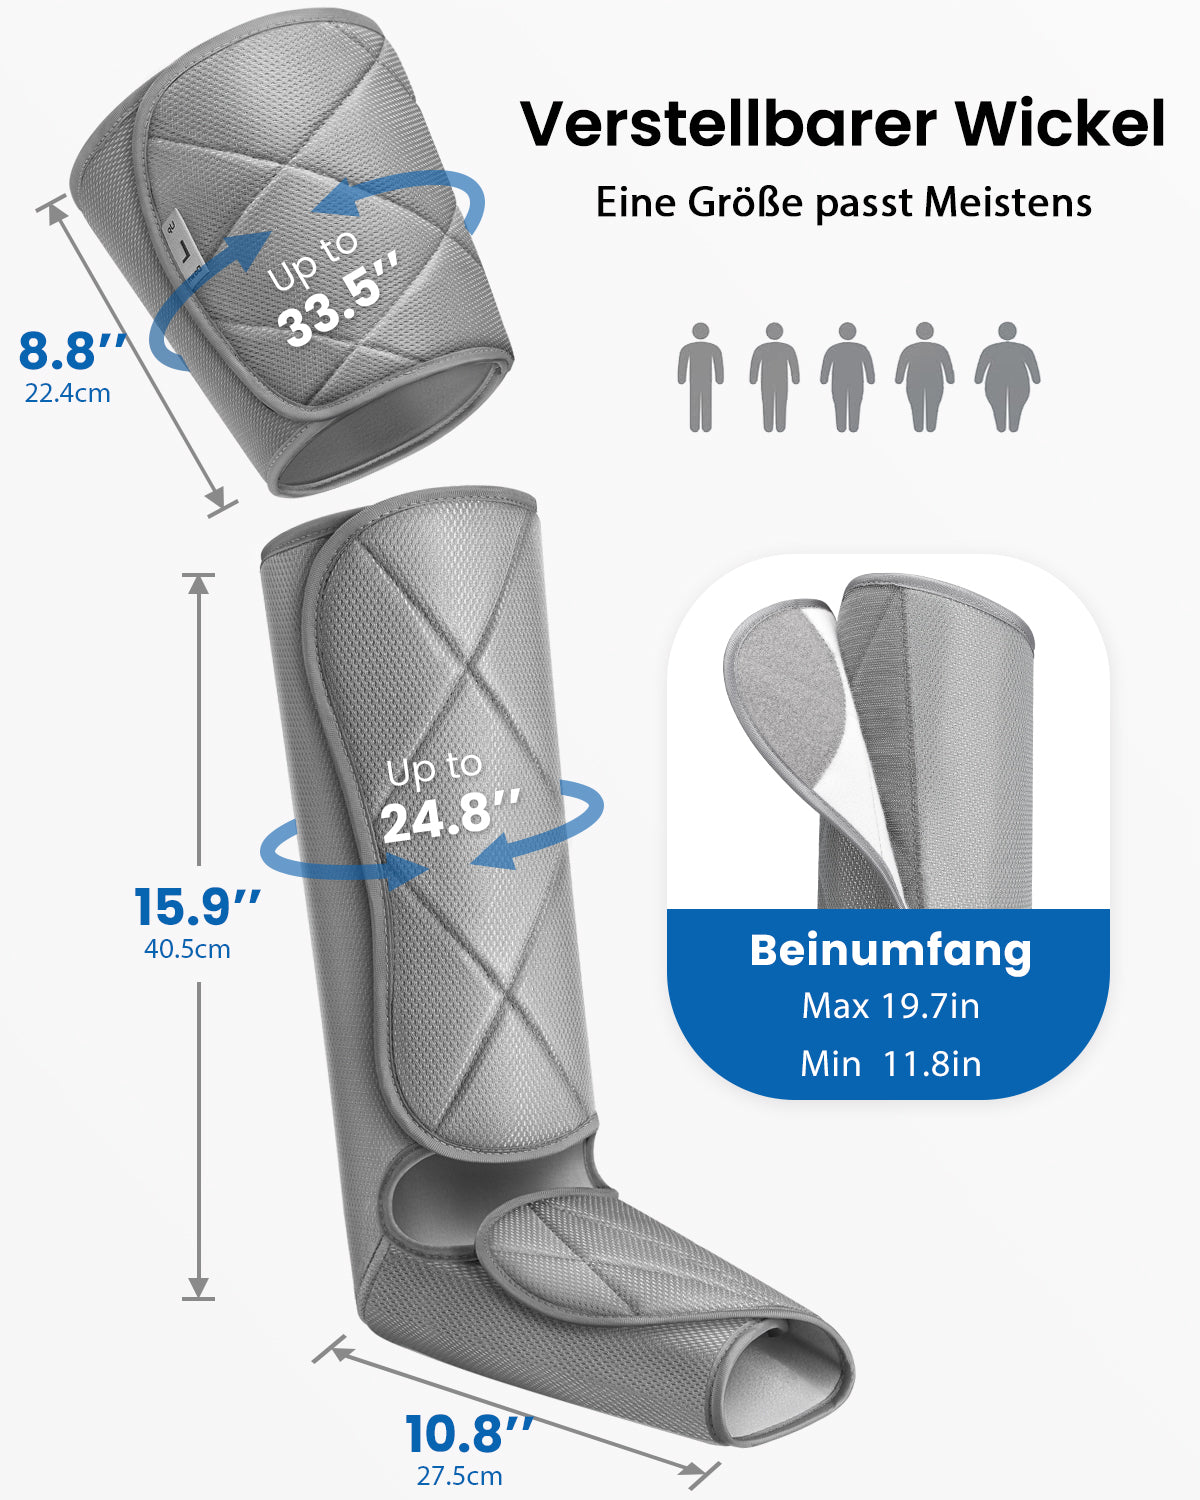 Ein Bild mit dem Renpho DE Luftkompressionsmassagegerät für die Beine zur Wiederherstellung von Gesundheit und Fitness.